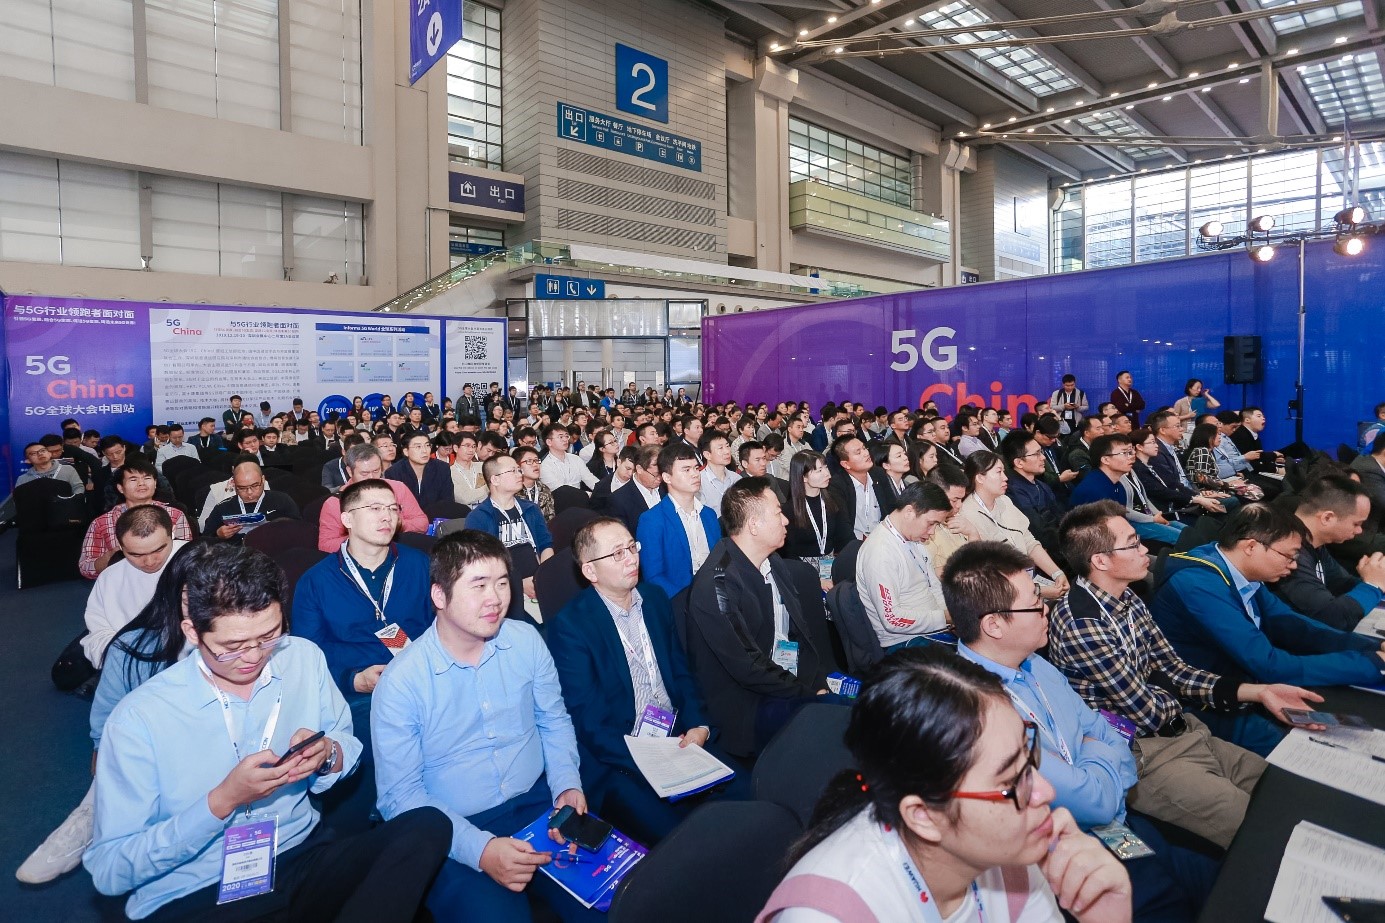 2019年5G全球大会中国站现场照片